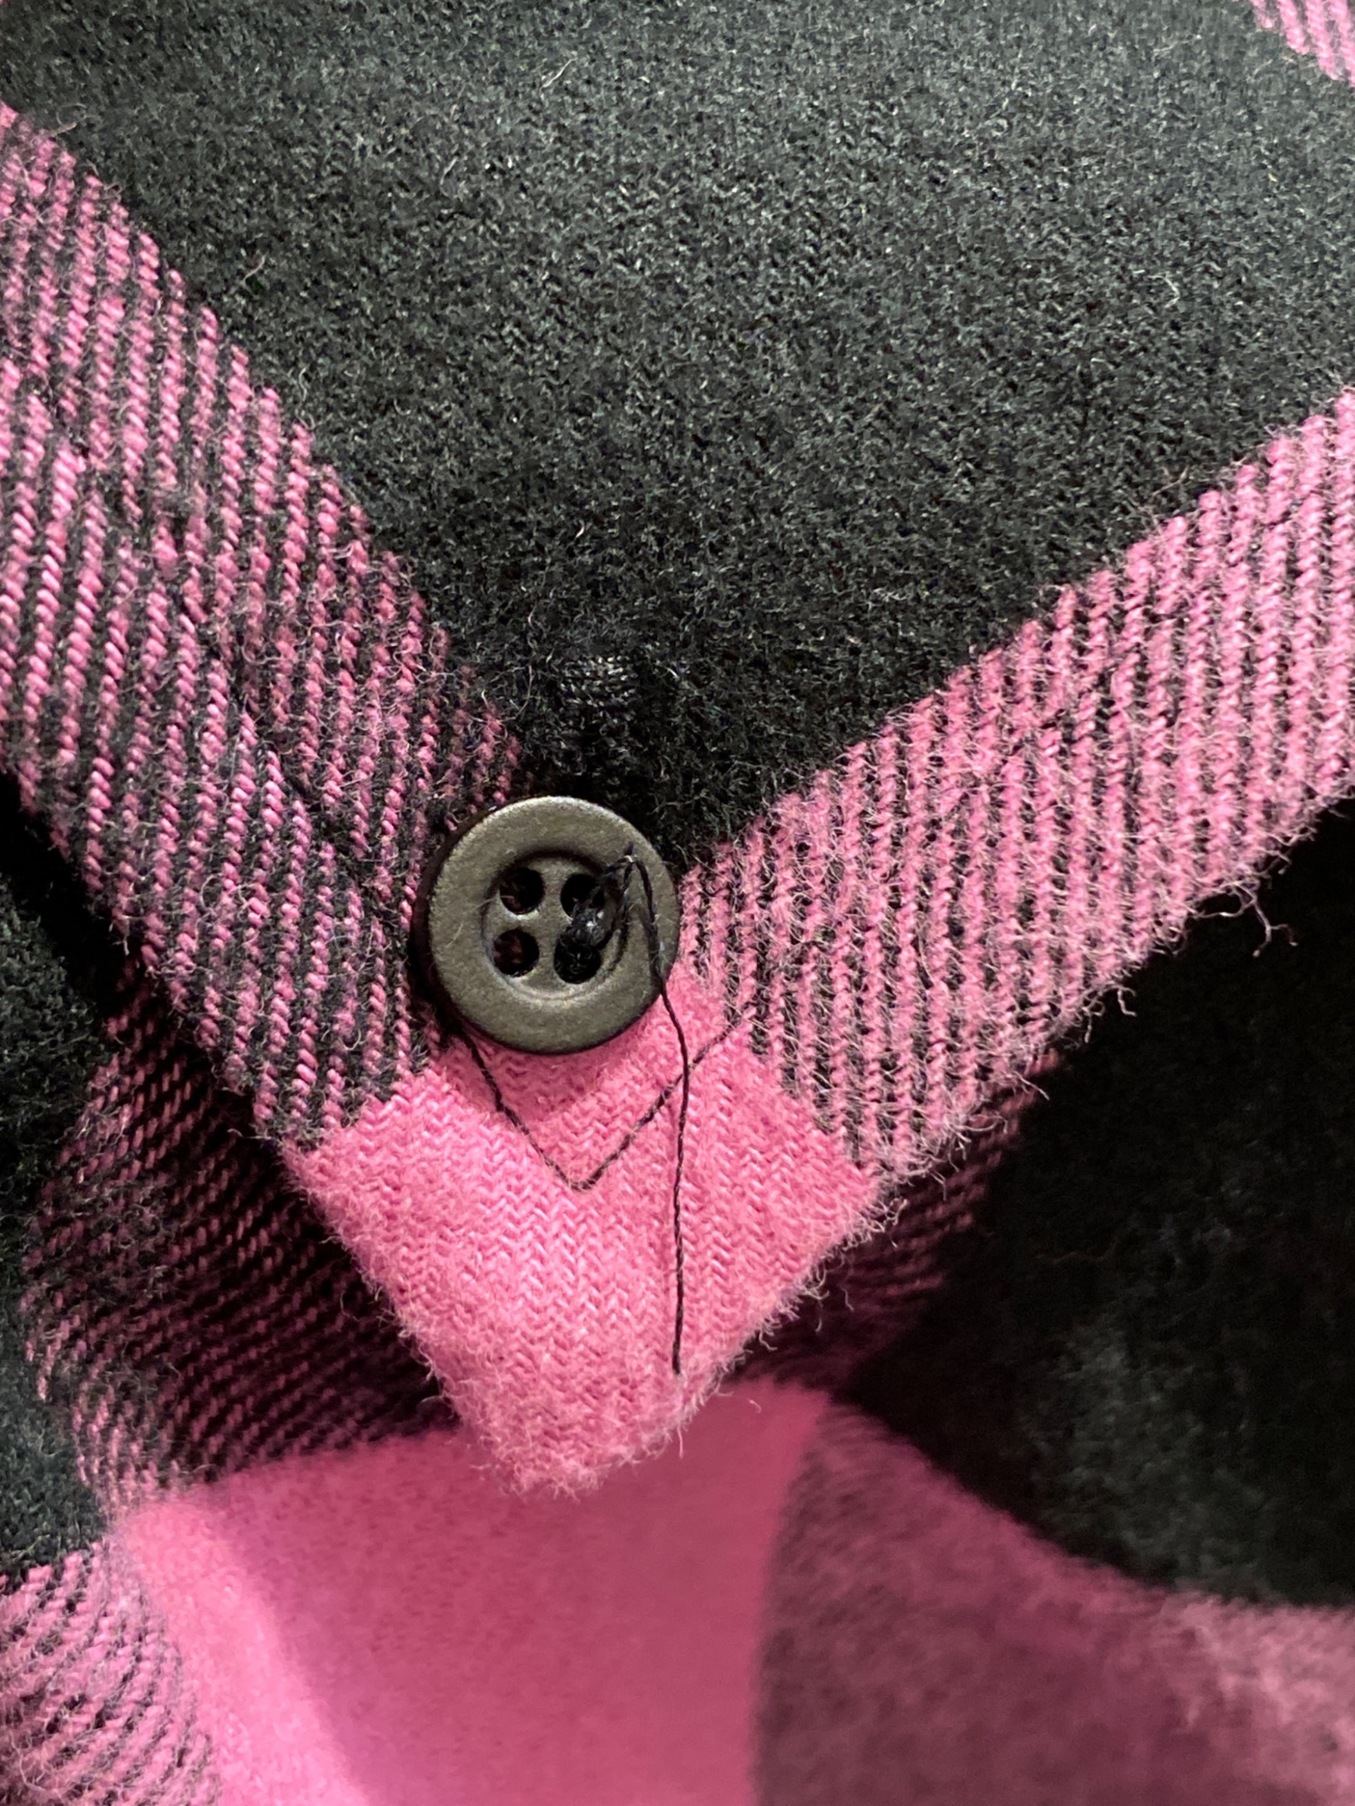 BALENCIAGA (バレンシアガ) オーバーサイズチェックネルシャツ ピンク×ブラック サイズ:34